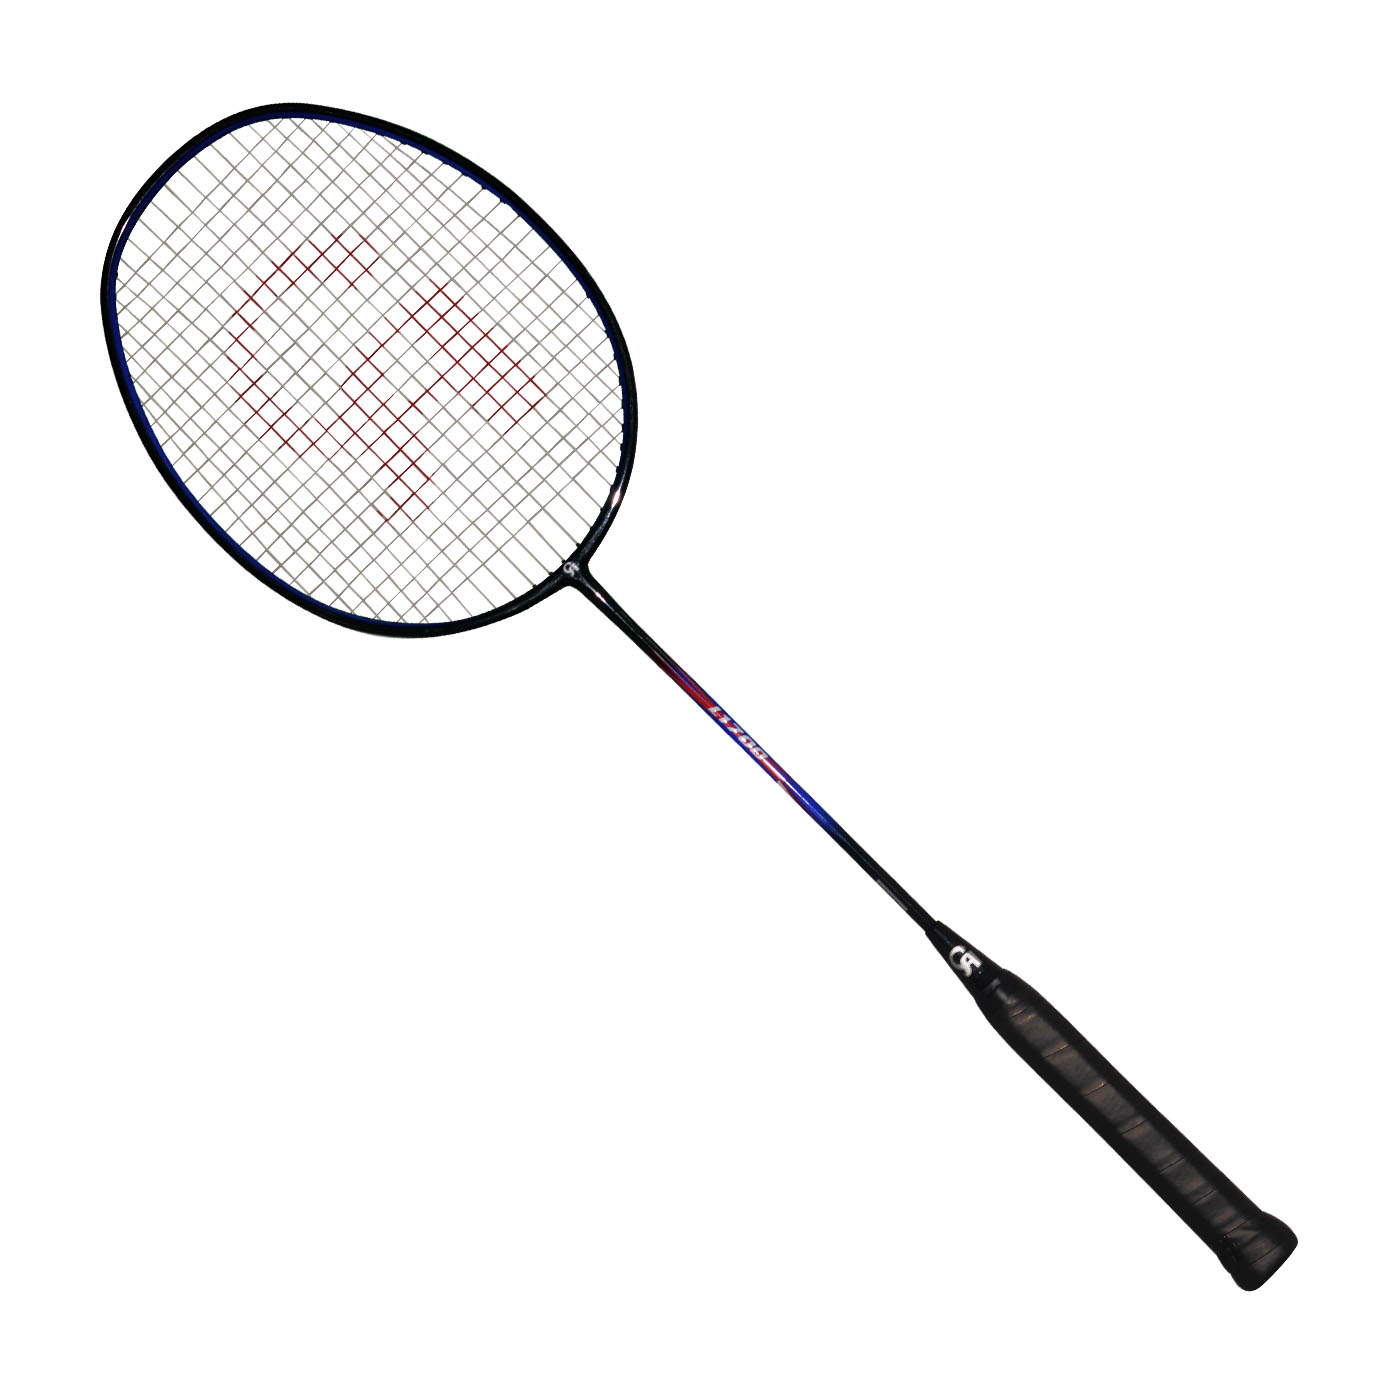 Badminton Racket Power L-1700 Buy Online At Best Prices In Pakistan Bucket.pk